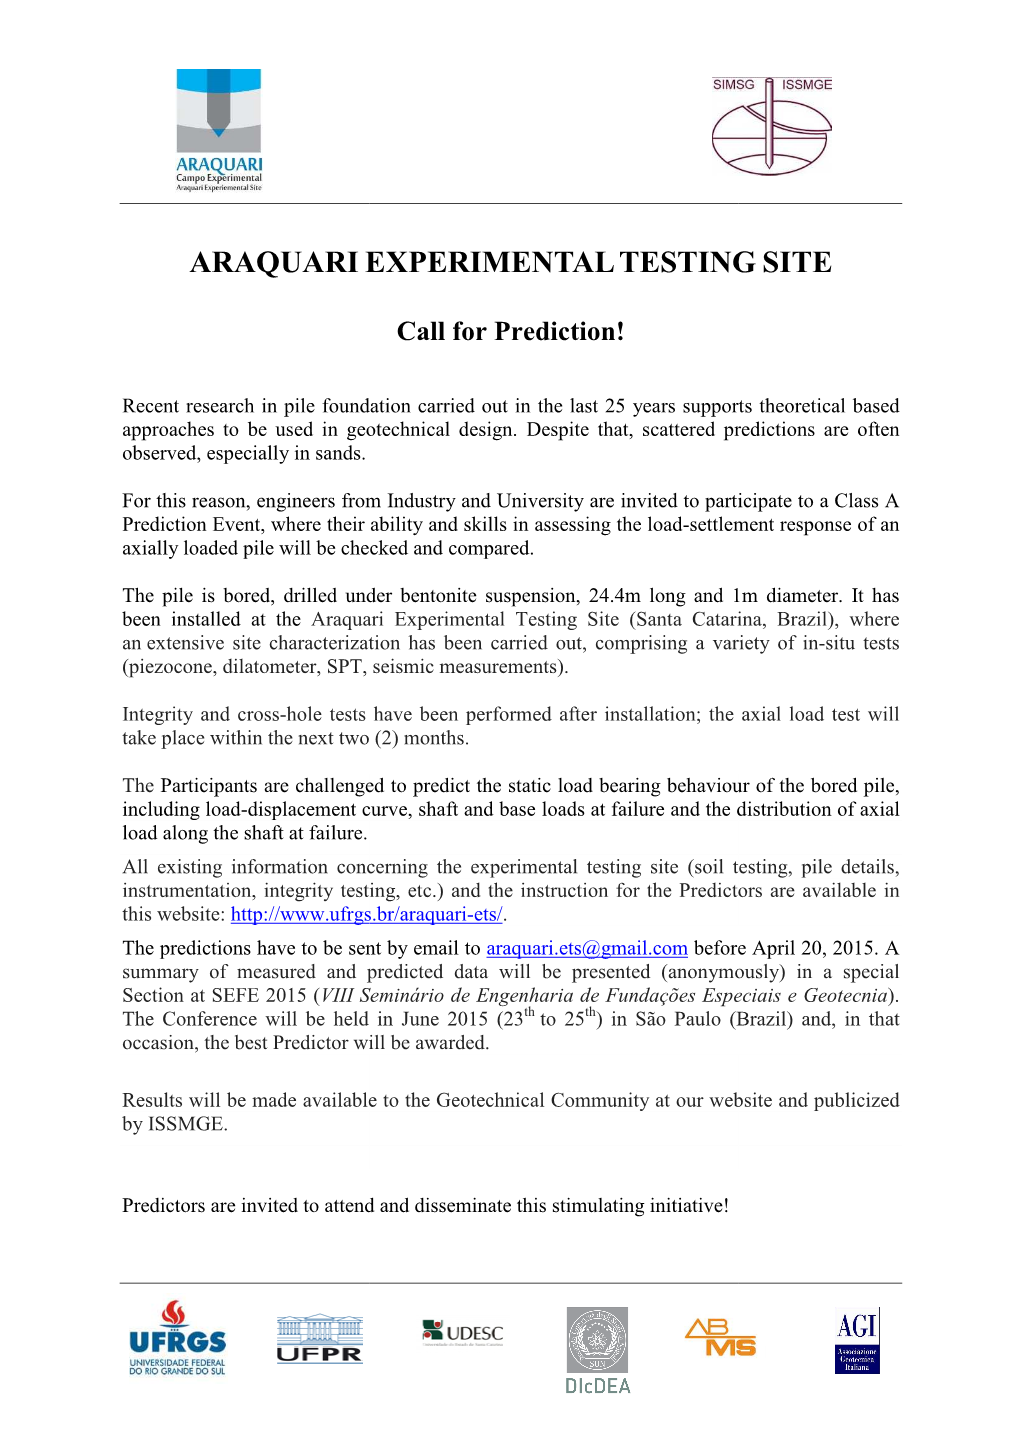 Call for Prediction Araquari Testing Site